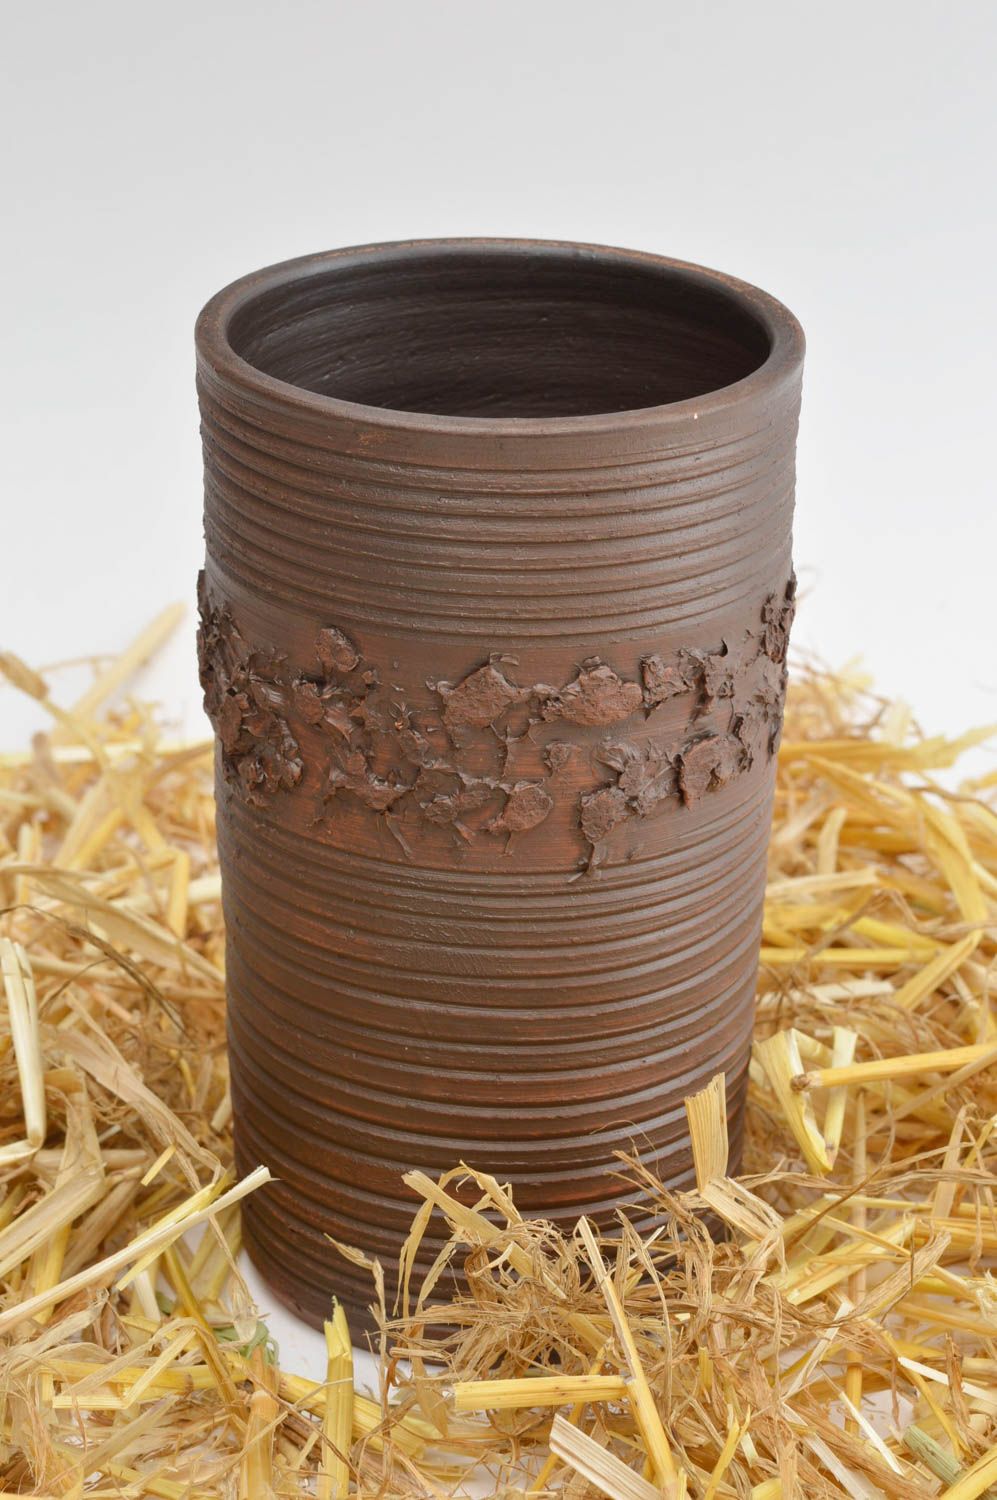 13 oz ceramic dark brown milk cup with no handle 0,74 lb photo 2